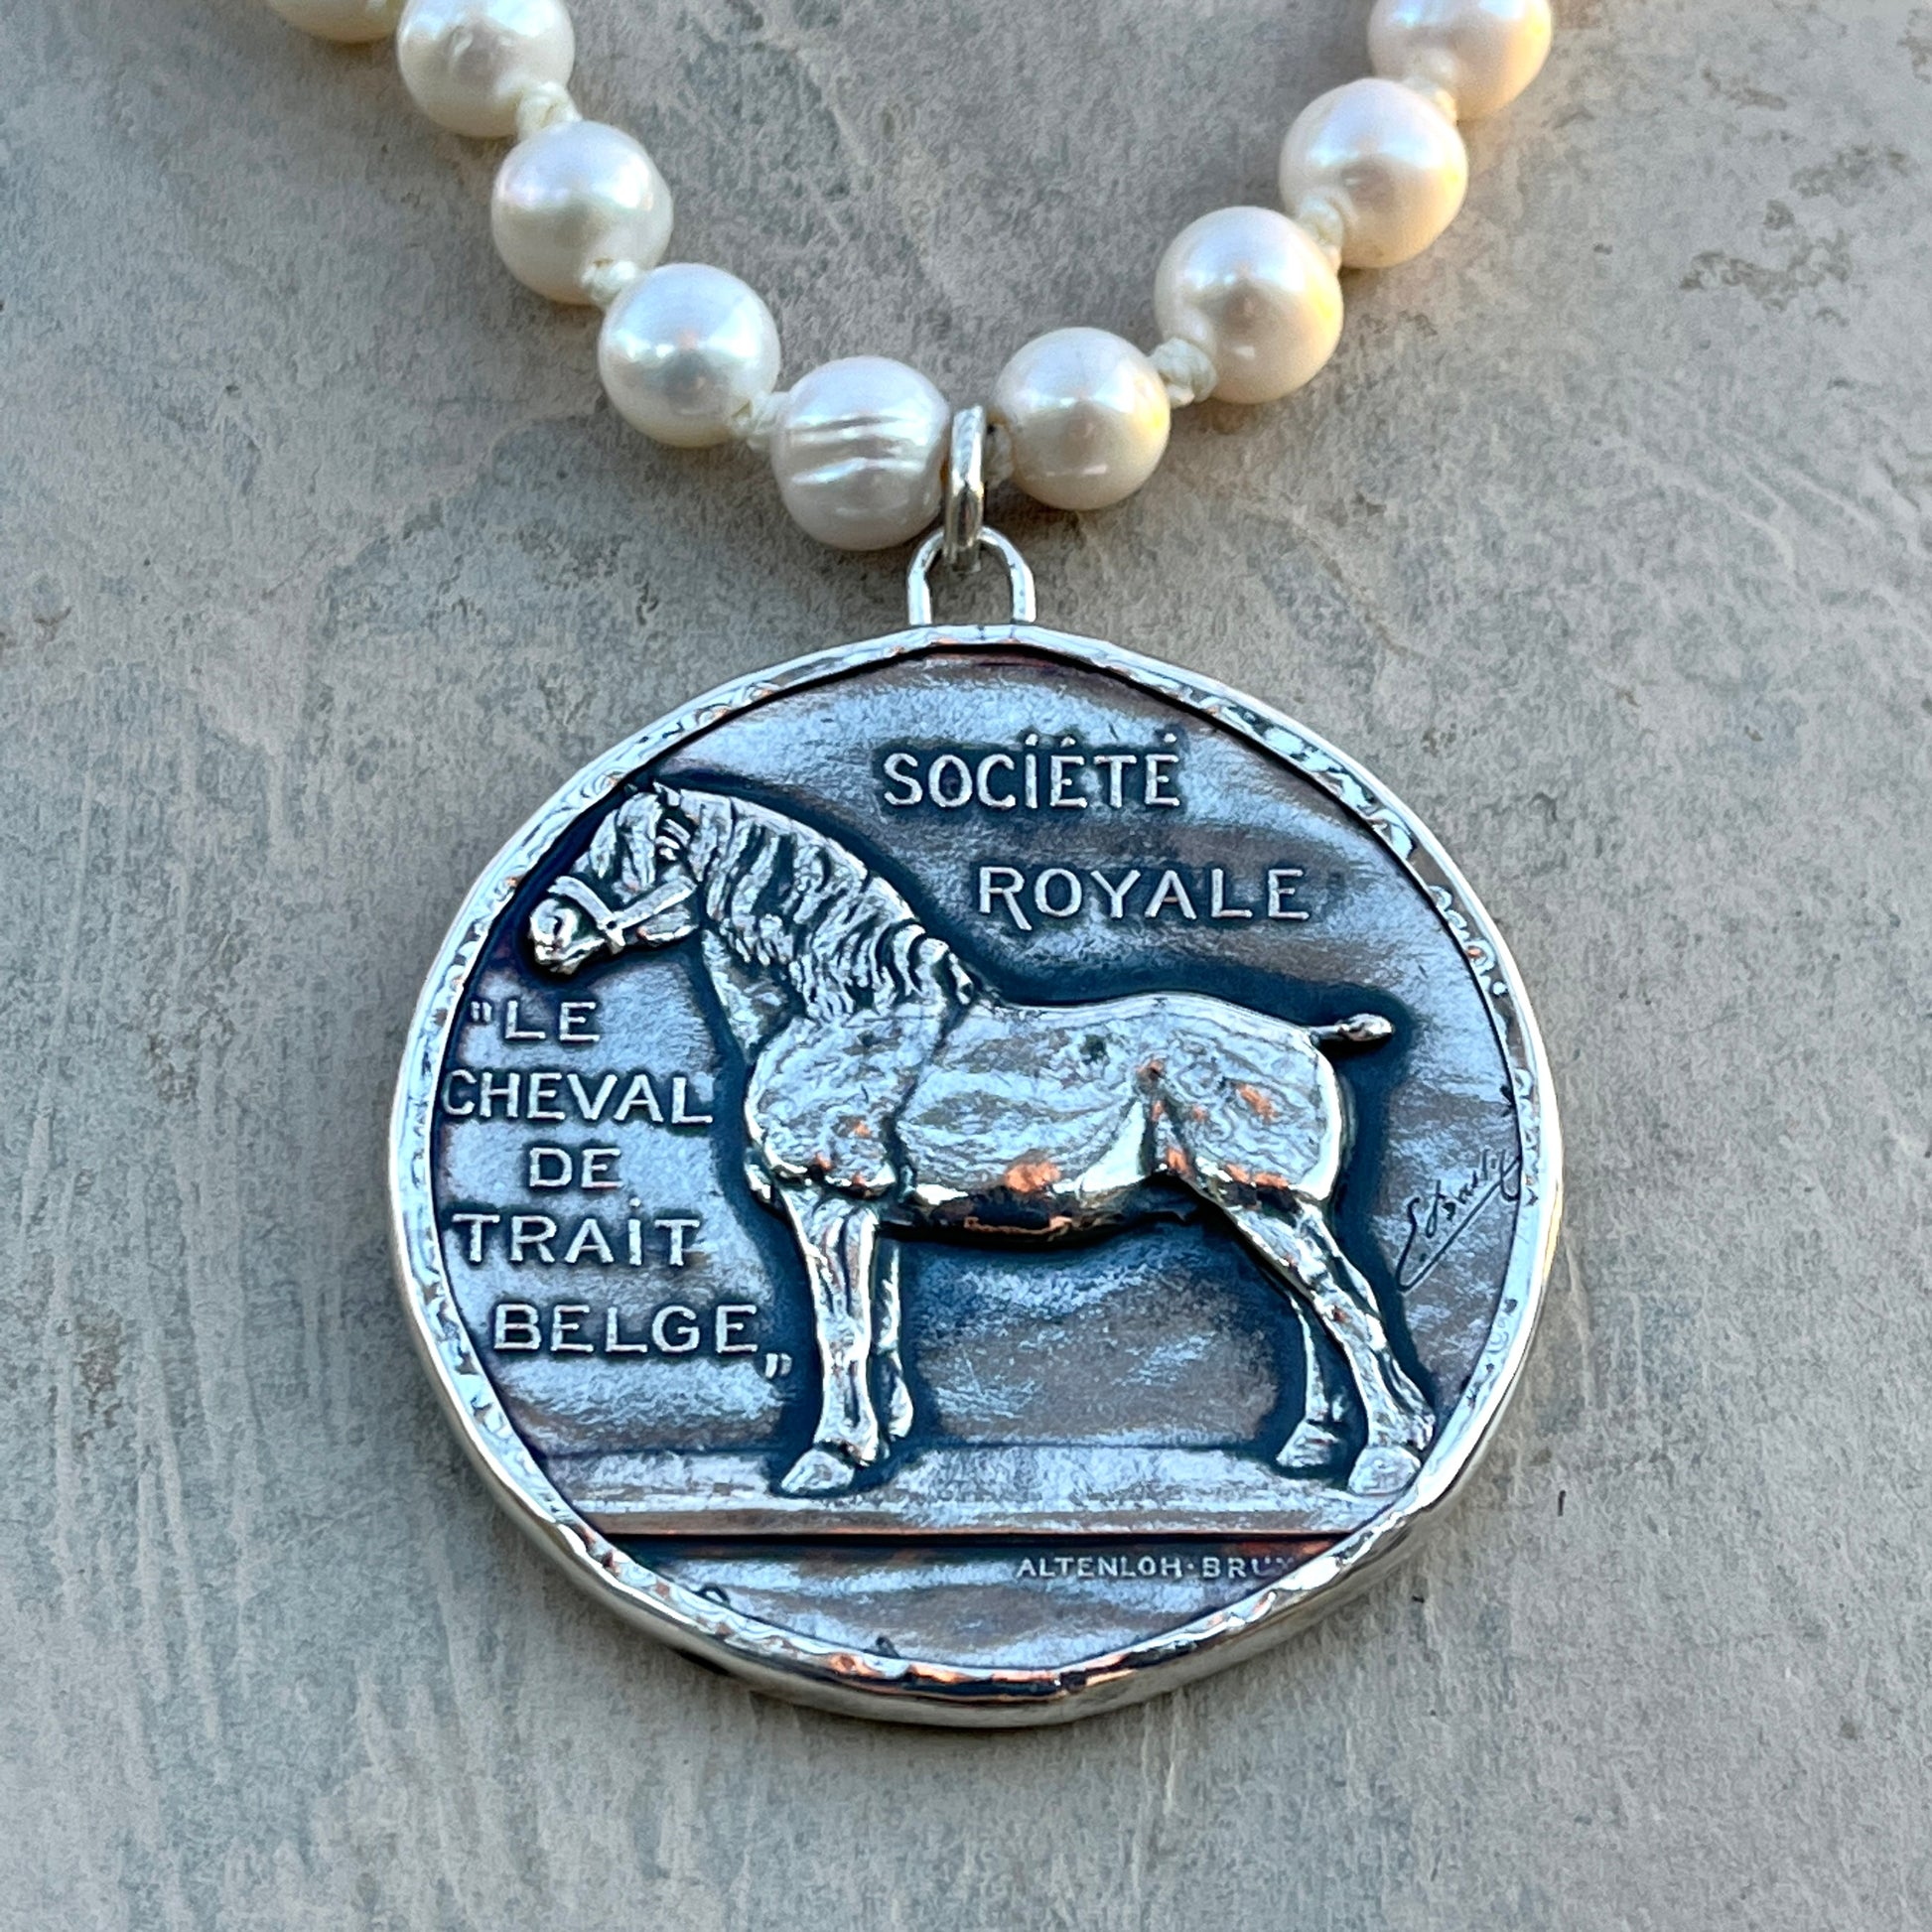 Le Cheval De Trait Belge Medal on Pearl Necklace